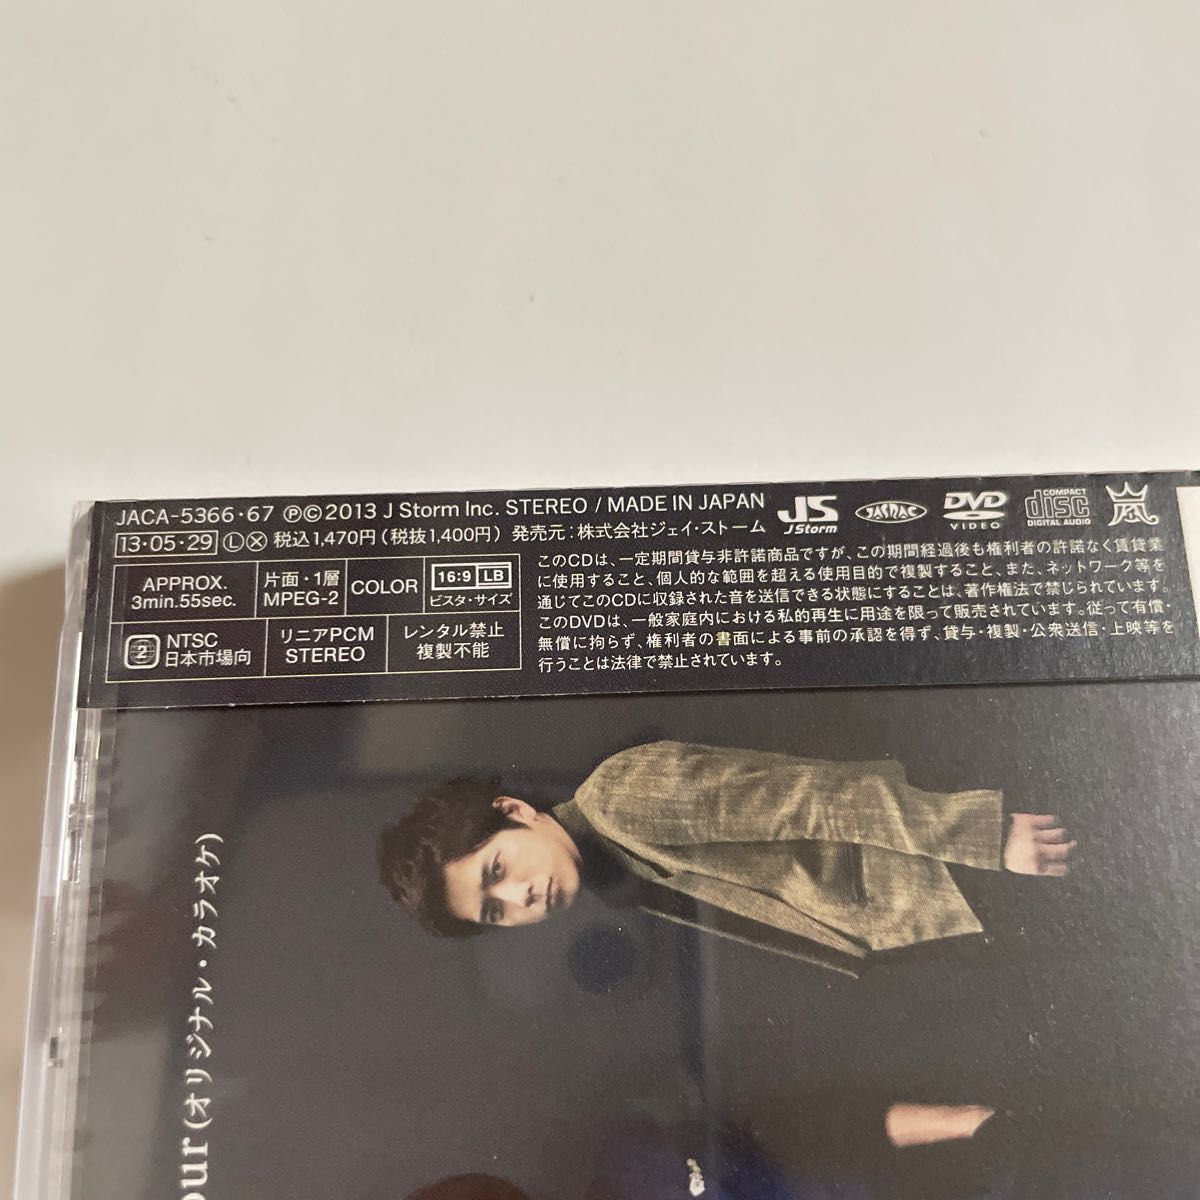 〈新品未開封〉嵐 CD+DVD/Endless Game 初回盤 13/5/29発売 オリコン加盟店